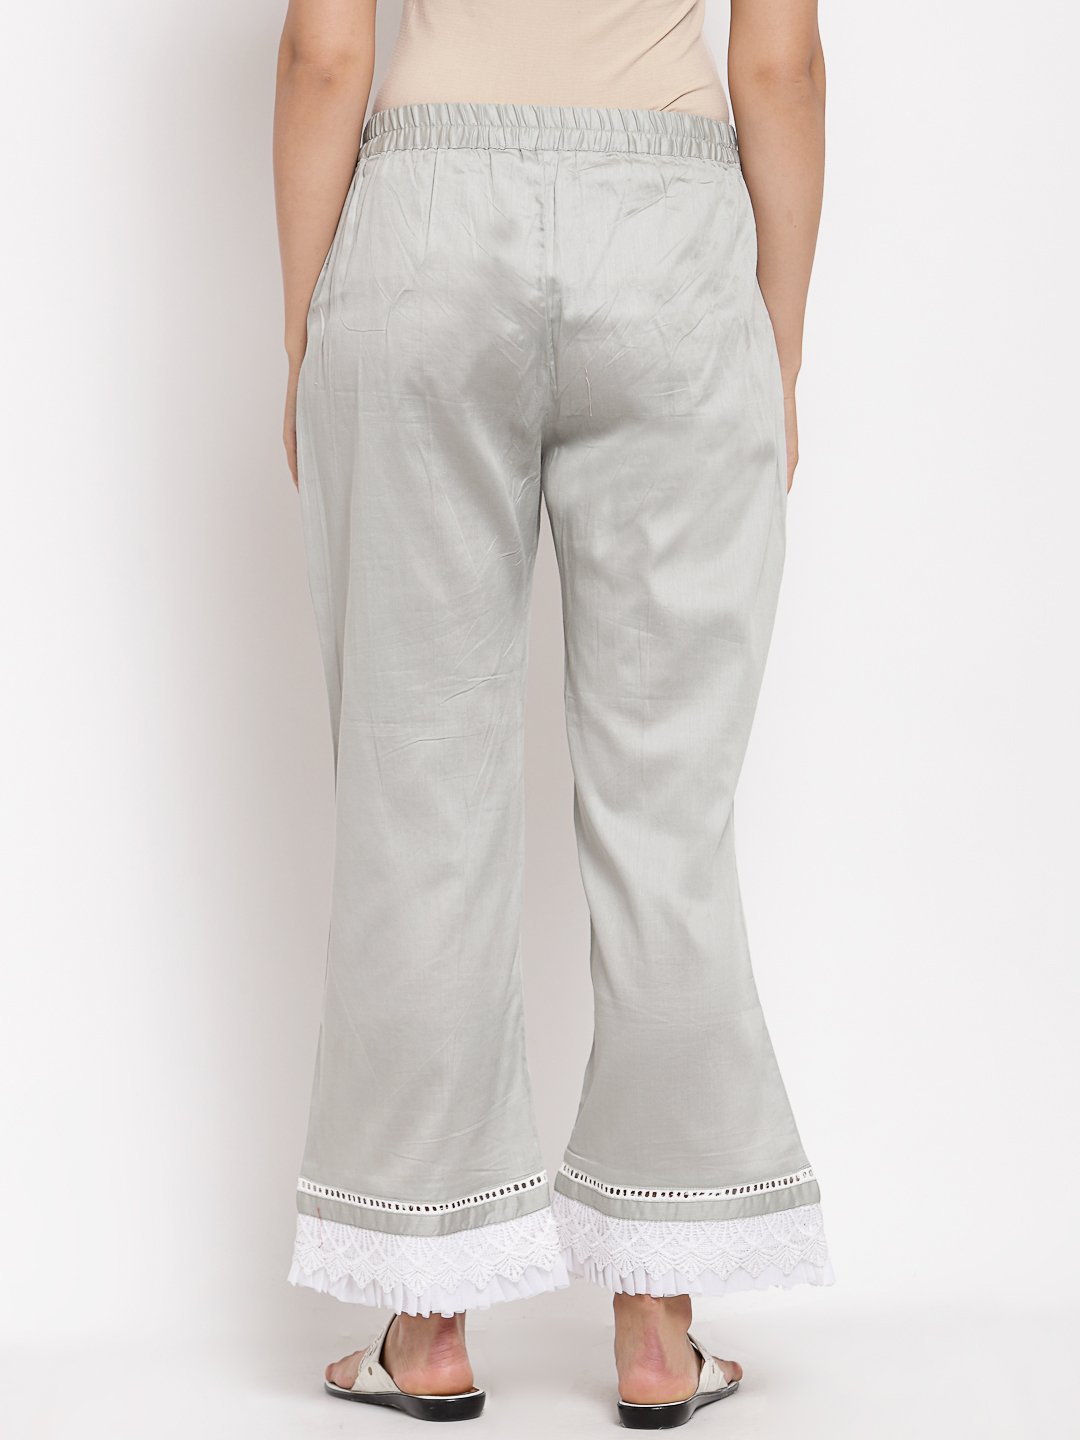 Women Grey Cotton Trouser by Myshka (1 Pc Set)